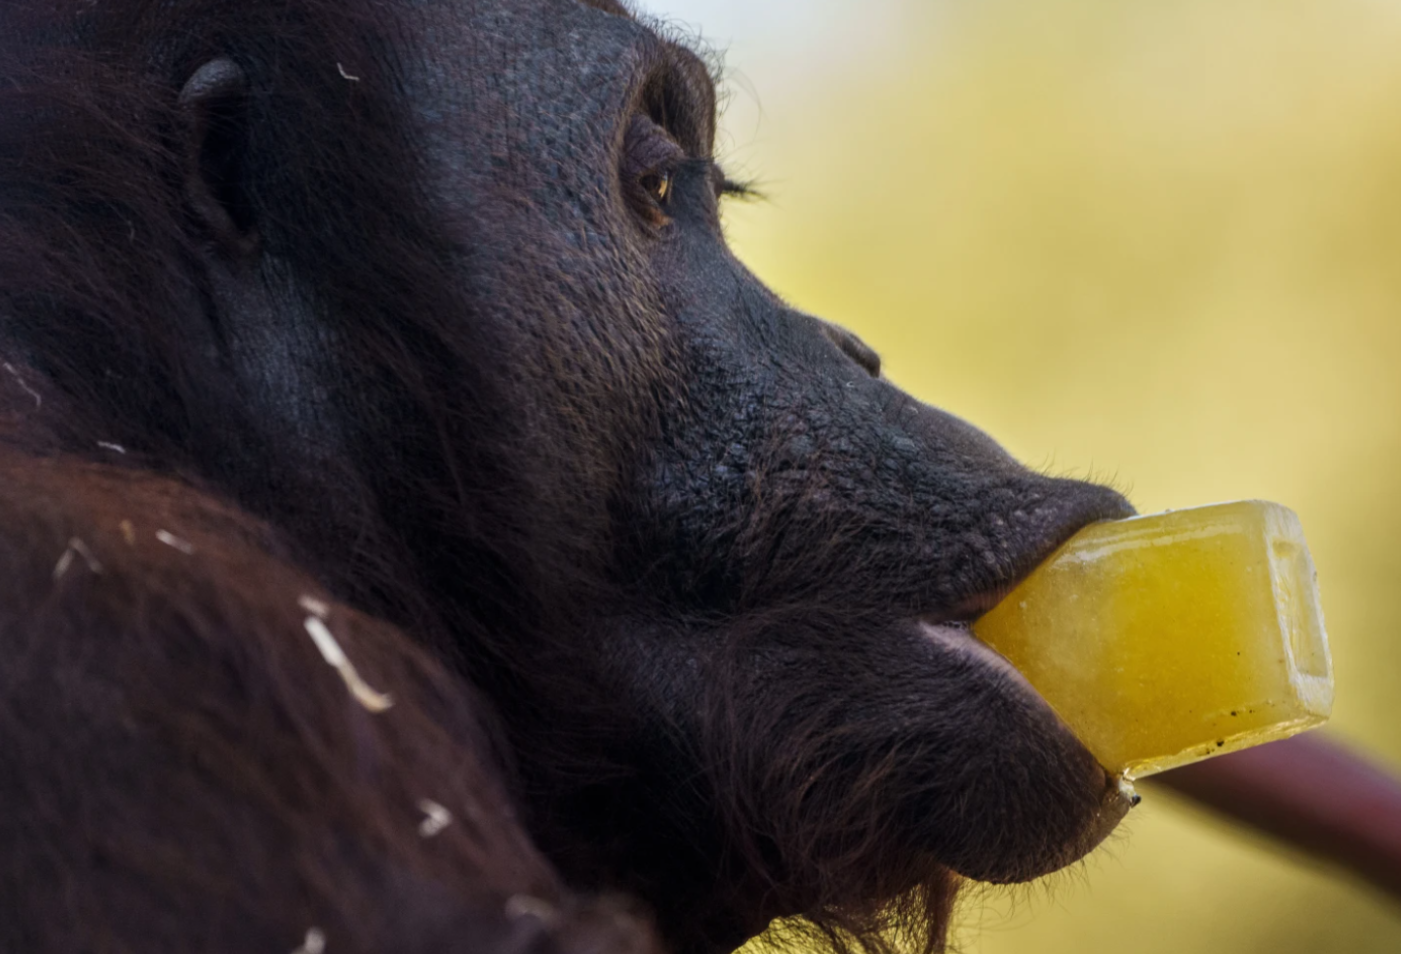 قرد من نوع أورانج أوتان يتناول قطعة مثلجة قدمت له في حديقة حيوانات مدريد باسبانيا بتاريخ 13 يوليو 2023